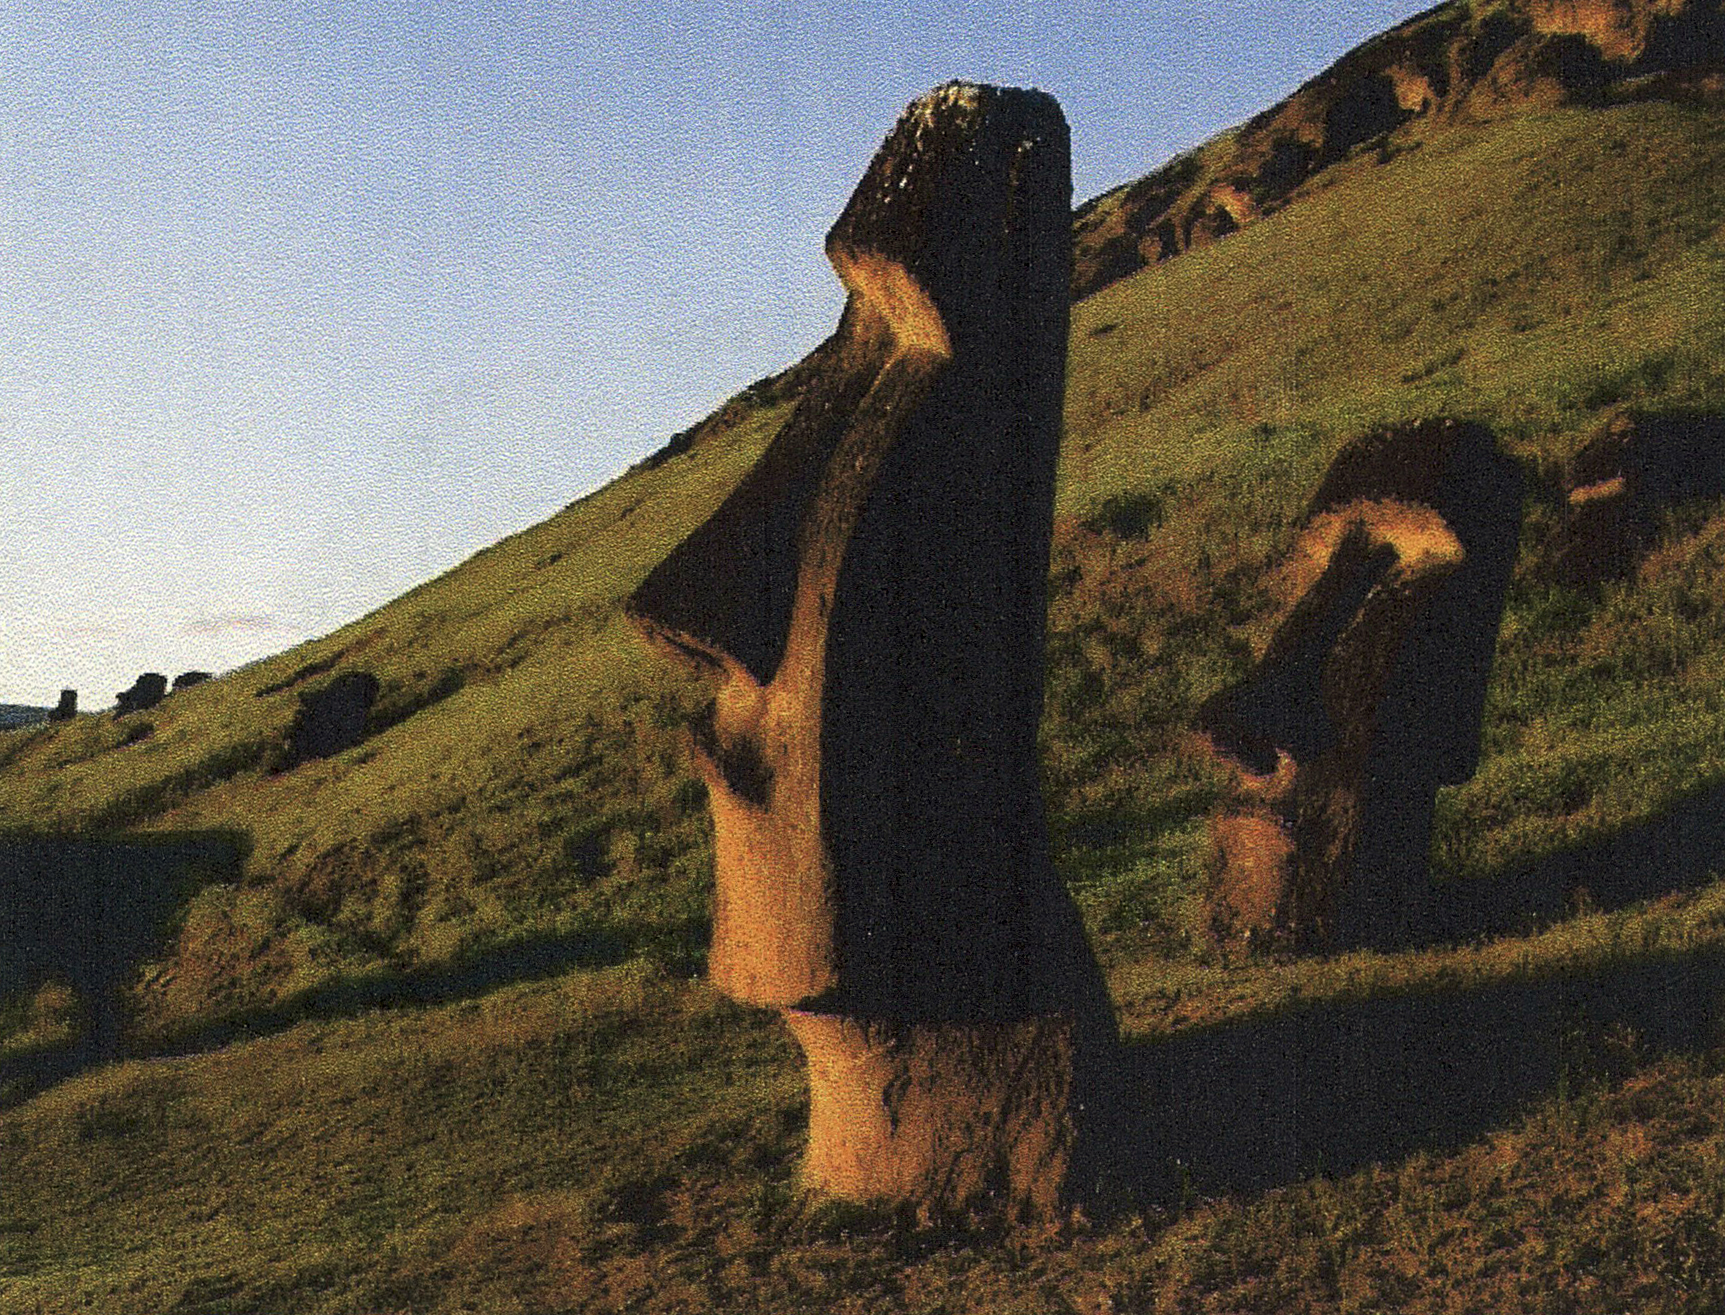 Камень пон. Остров Пасхи статуи Моаи. Каменные истуканы острова Пасхи. Каменные статуи Моаи остров Пасхи Чили. Моаи на острове Пасхи.